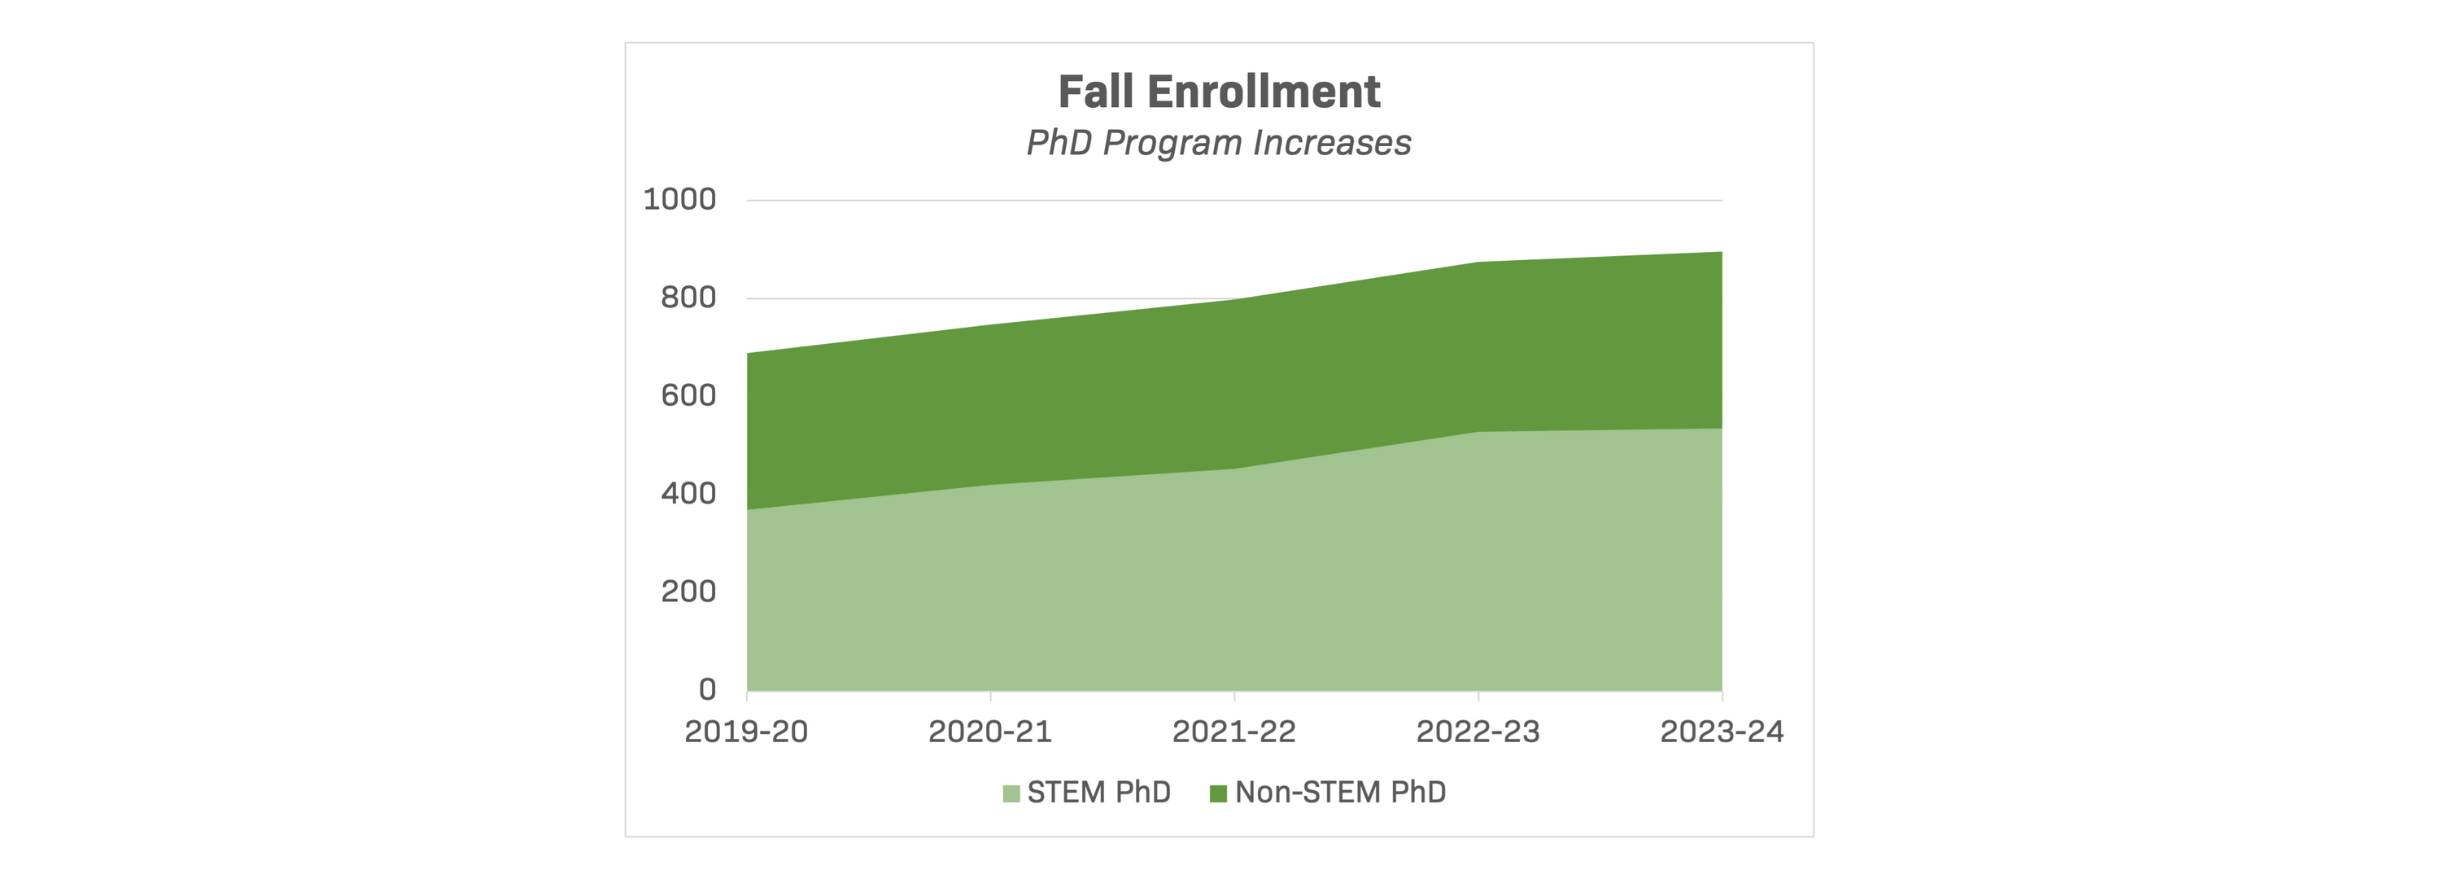 Fall Enrollment – PhD Increases